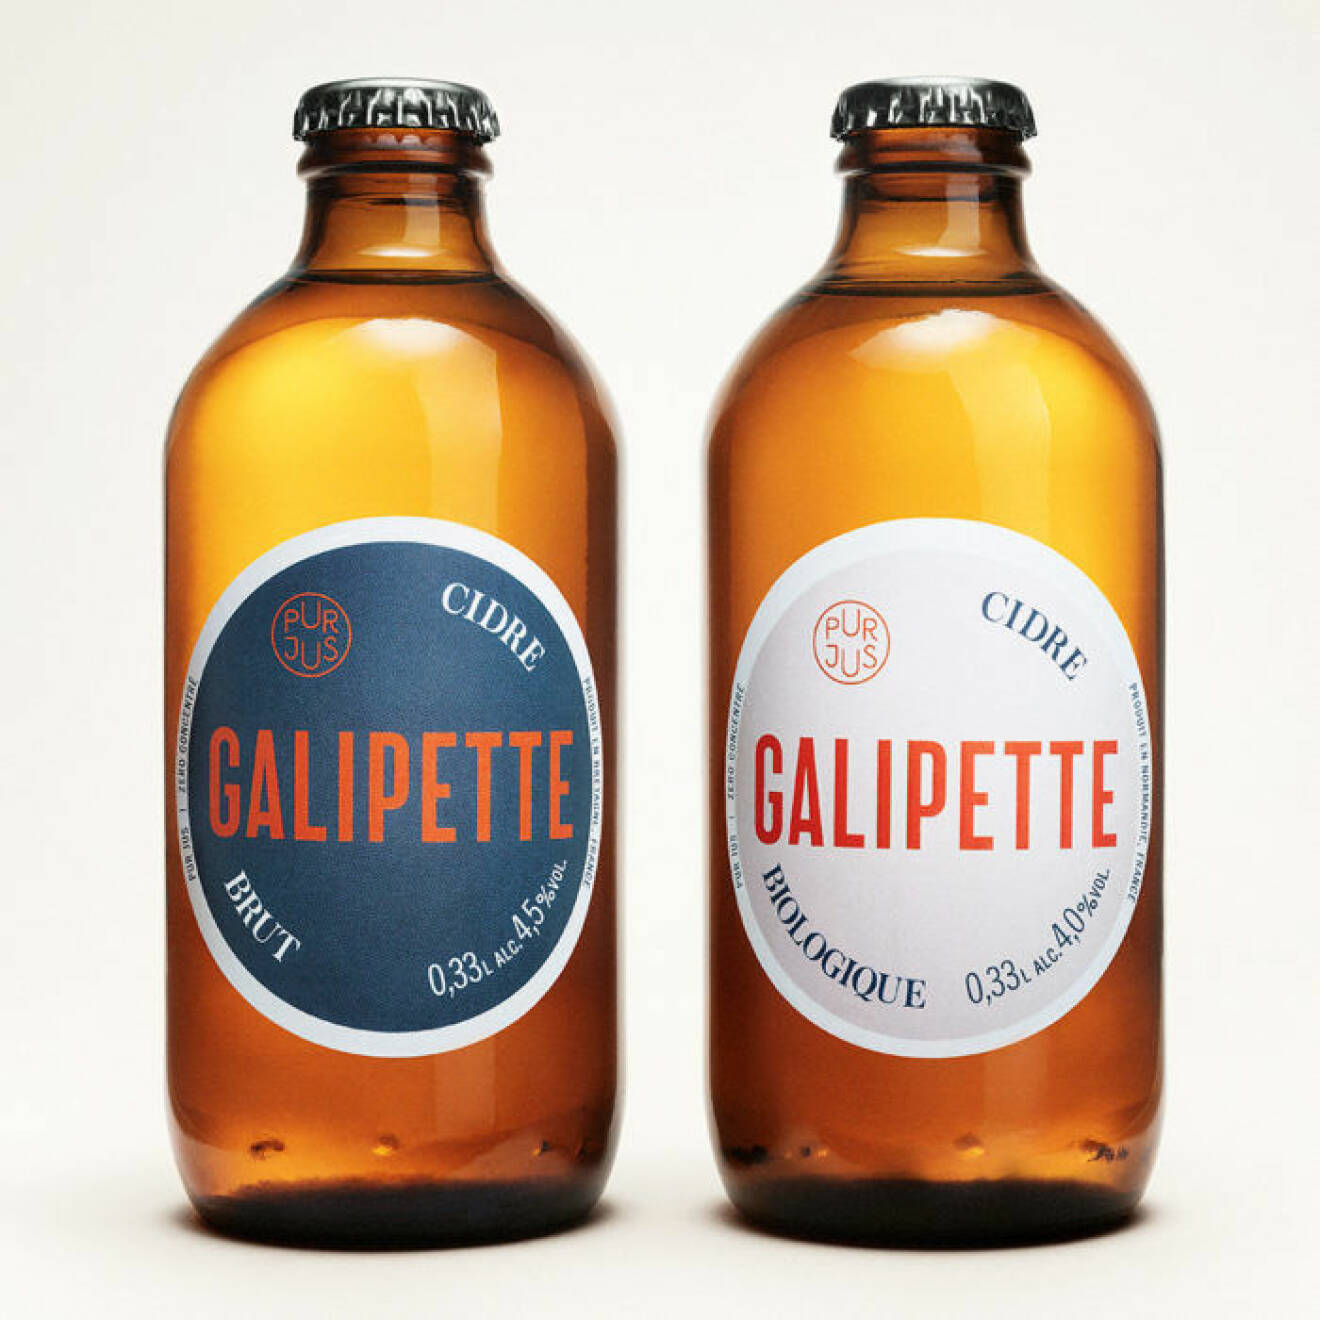 Franska cidern Galipette lanseras i Sverige.